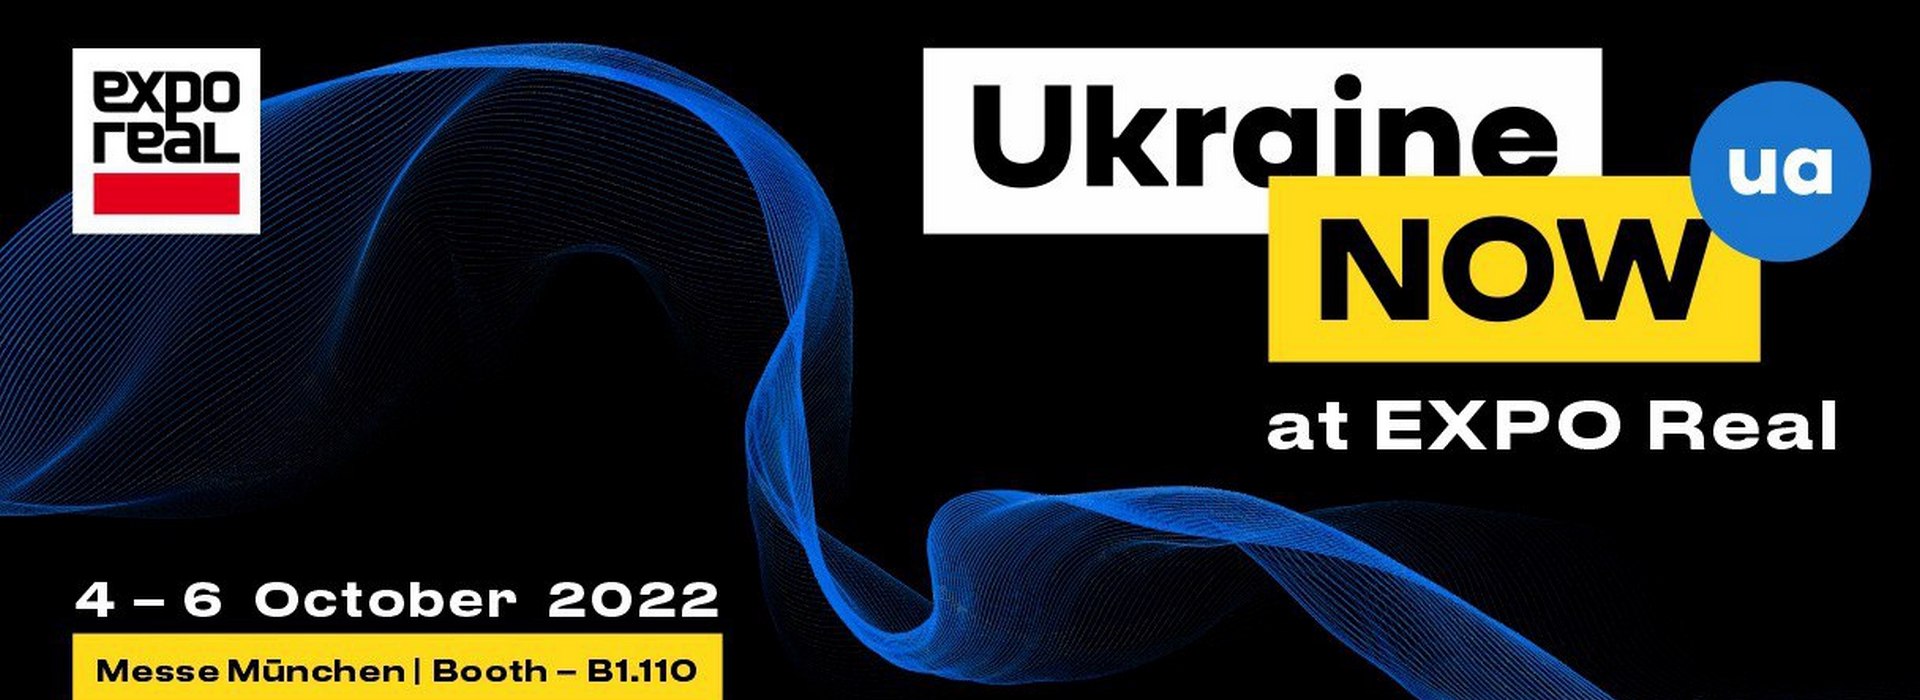 Україна на EXPO REAL: Окрім картин війни Україна відкриває нові перспективи для майбутнього бізнесу